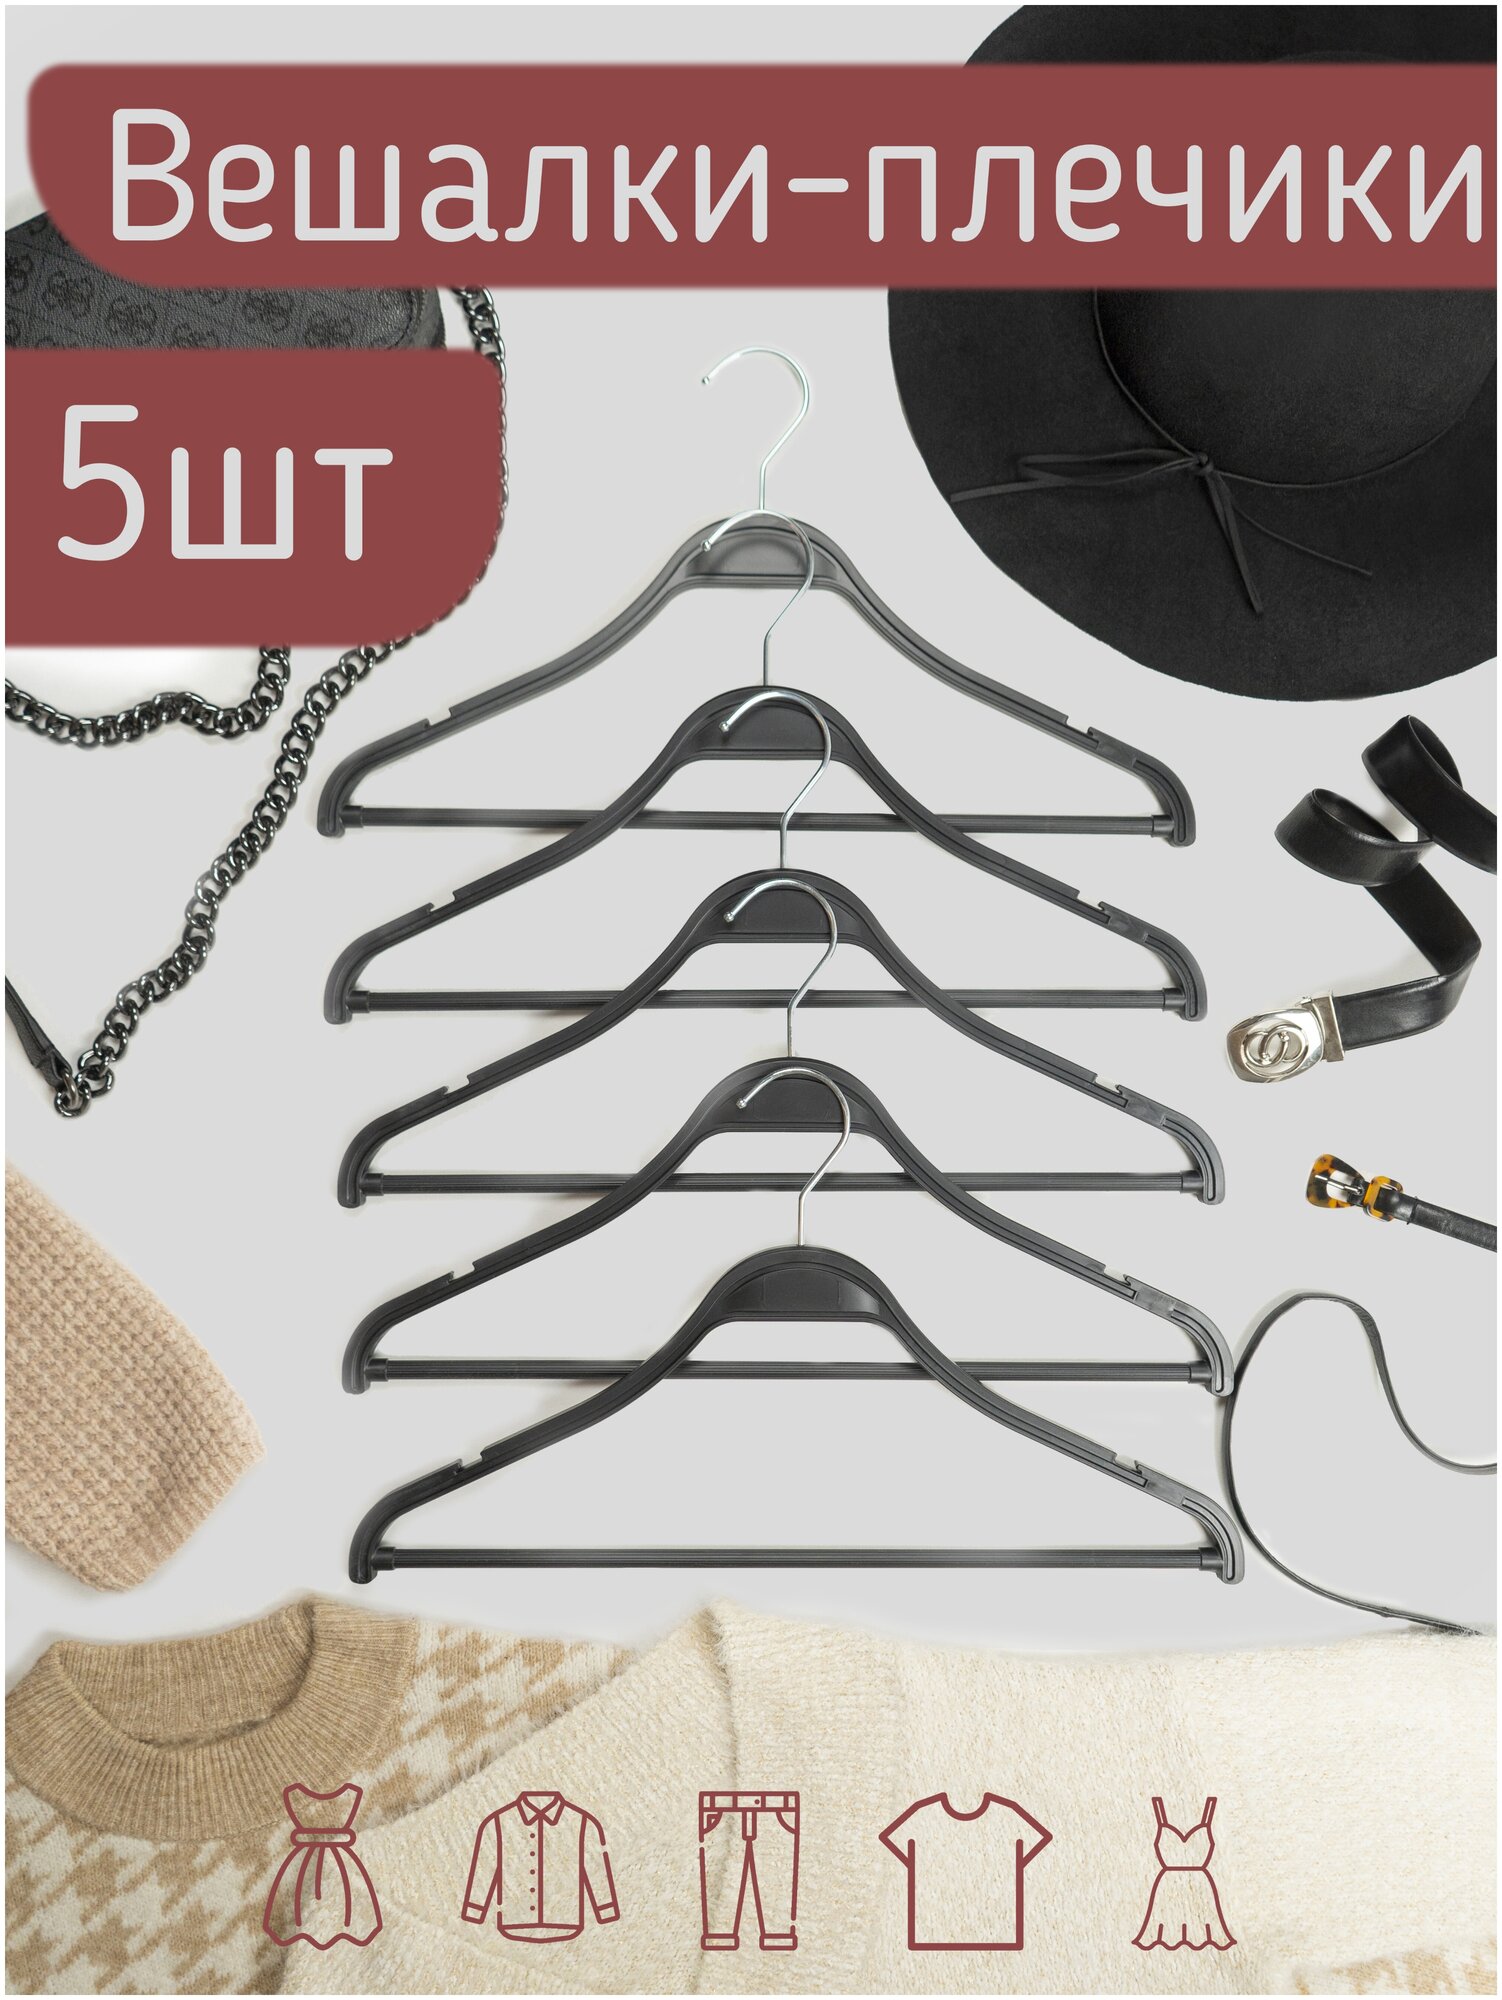 Вешалки-плечики для одежды пластик под дерево с перекладиной цвет черный 41 см комплект 5 штук